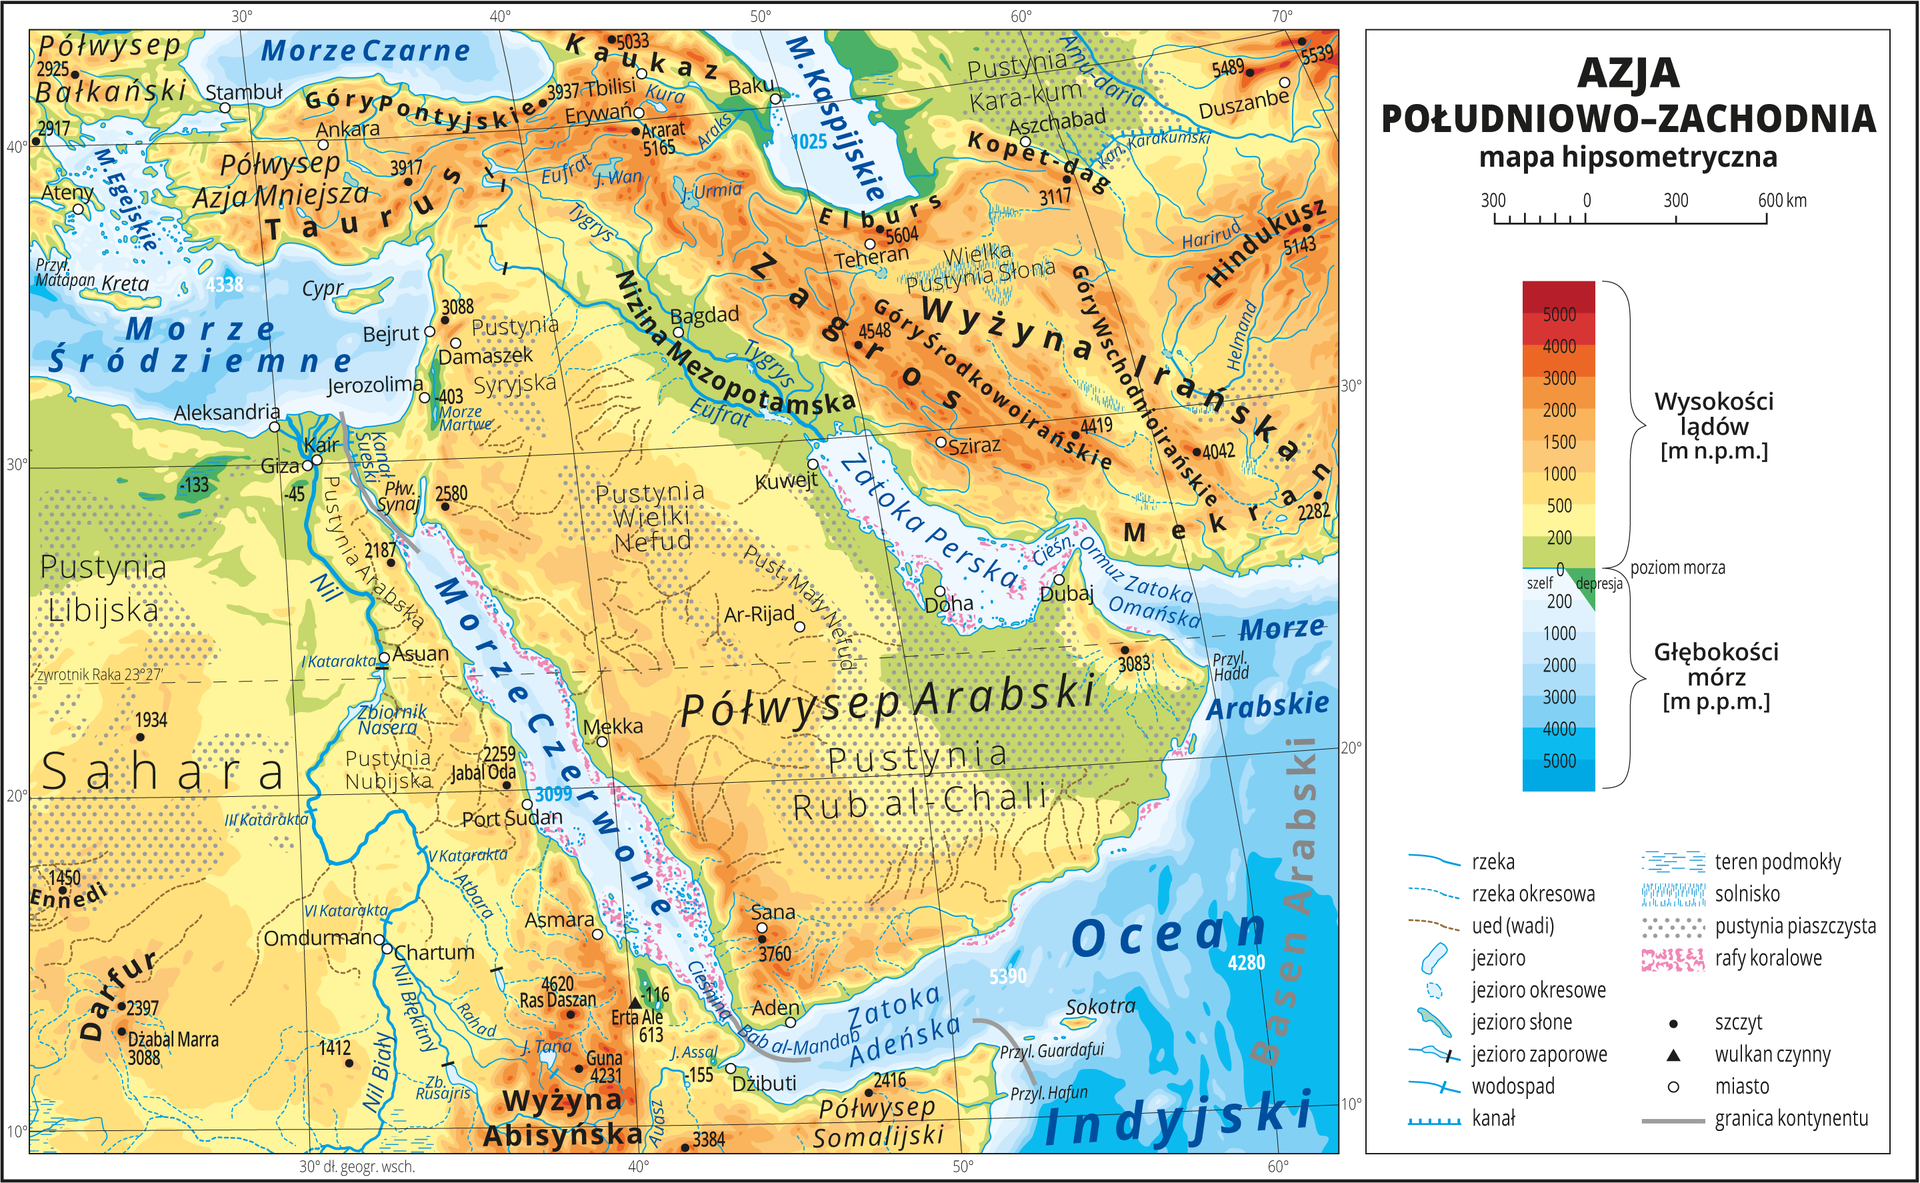 Ilustracja przedstawia mapę hipsometryczną Azji Południowo-Zachodniej. W obrębie lądów występują obszary w kolorze zielonym, żółtym, pomarańczowym i czerwonym. Przeważają wyżyny i góry, kropkowaniem oznaczono liczne pustynie. Morza zaznaczono kolorem niebieskim. Na mapie opisano nazwy półwyspów, wysp, nizin, wyżyn i pasm górskich, mórz, zatok, rzek i jezior. Oznaczono i opisano stolice i główne miasta. Oznaczono czarnymi kropkami i opisano szczyty górskie. Trójkątami oznaczono czynne wulkany i podano ich wysokości. Mapa pokryta jest równoleżnikami i południkami. Dookoła mapy w białej ramce opisano współrzędne geograficzne co dziesięć stopni. W legendzie umieszczono i opisano znaki użyte na mapie.